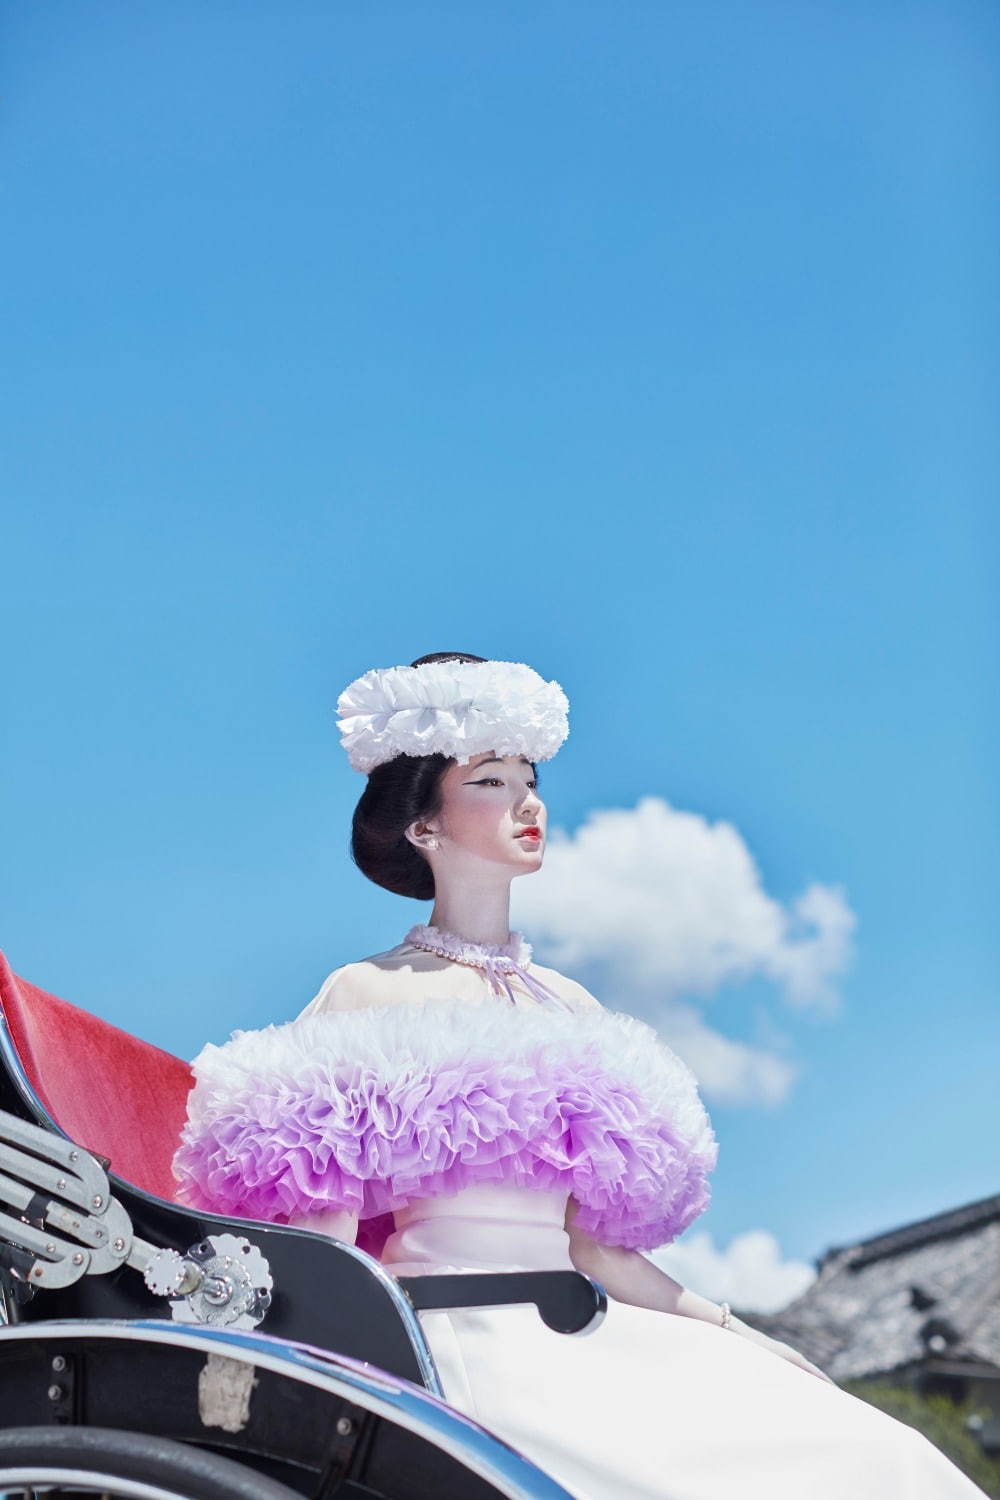 トモ コイズミのウェディングドレス 伝統的な日本の花嫁衣装が着想源 ファッションプレス